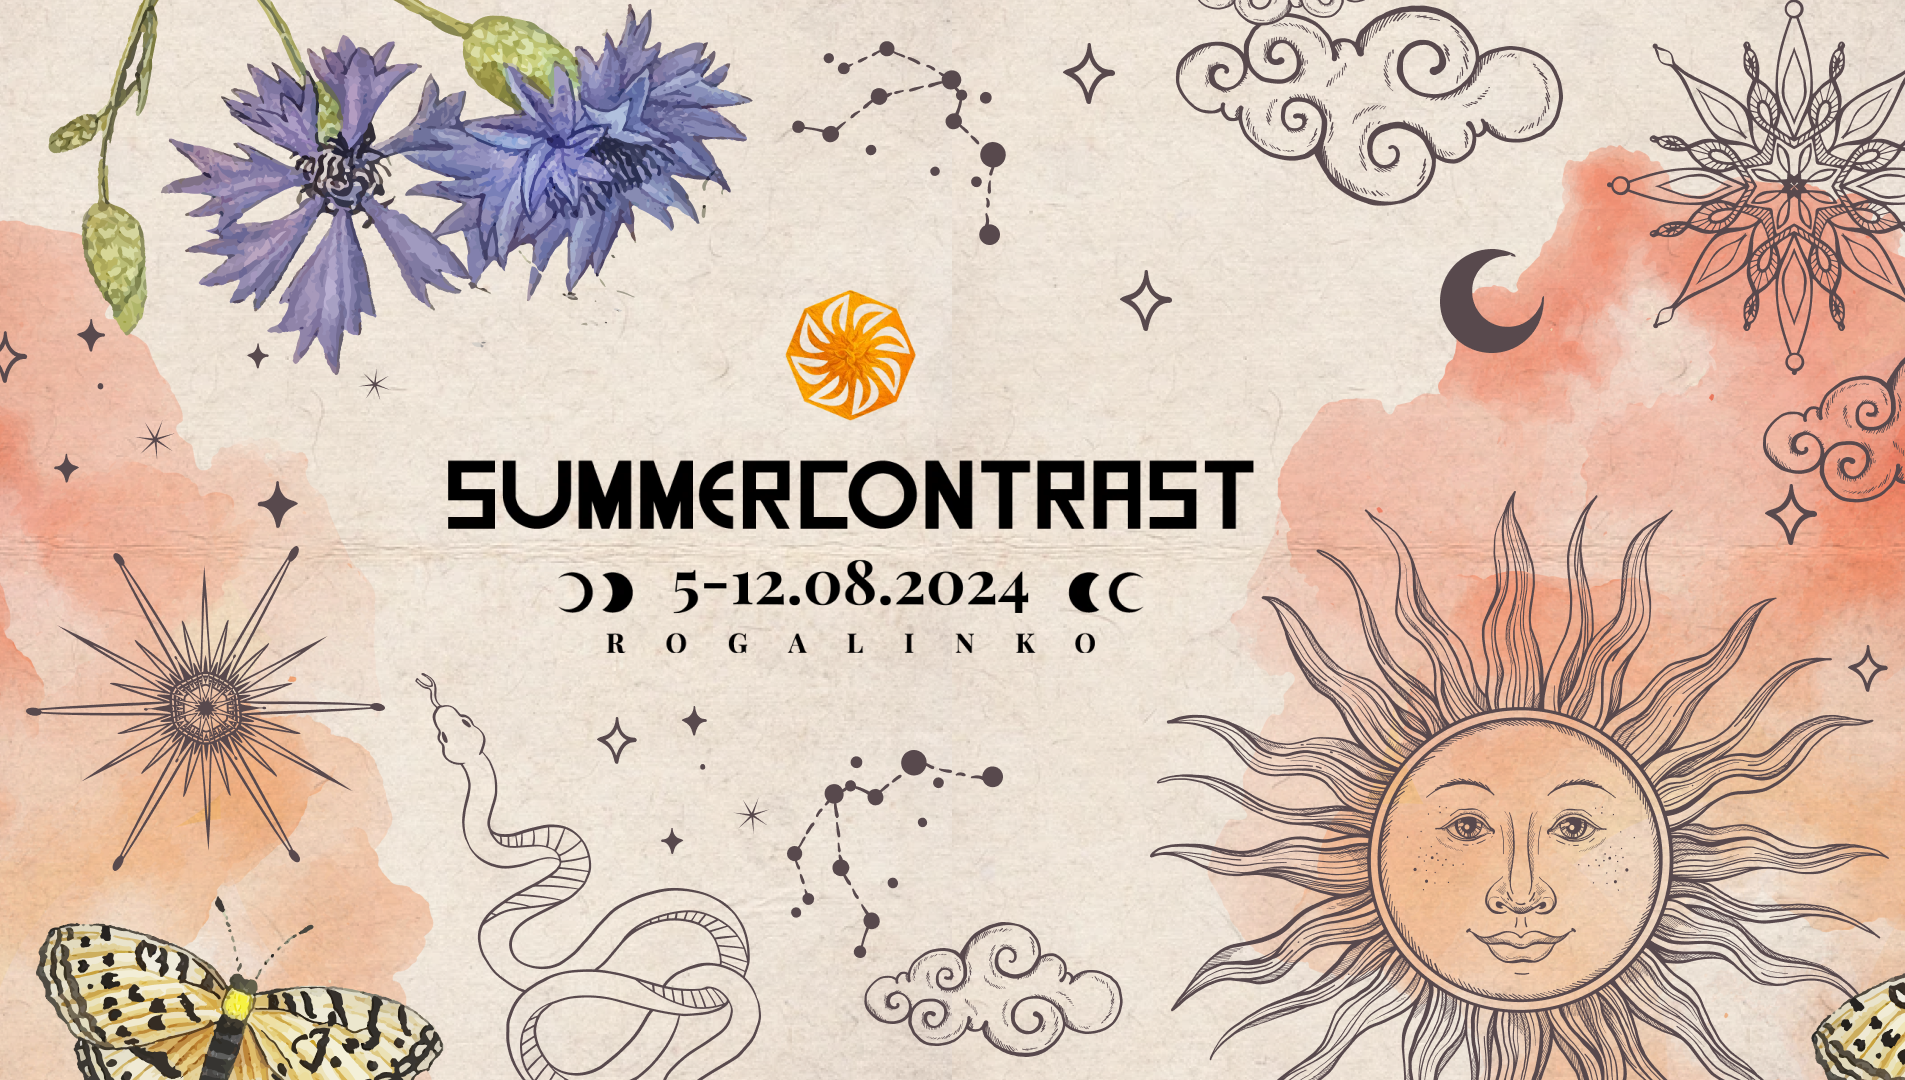 Summer Contrast Festival 2024 - Página frontal